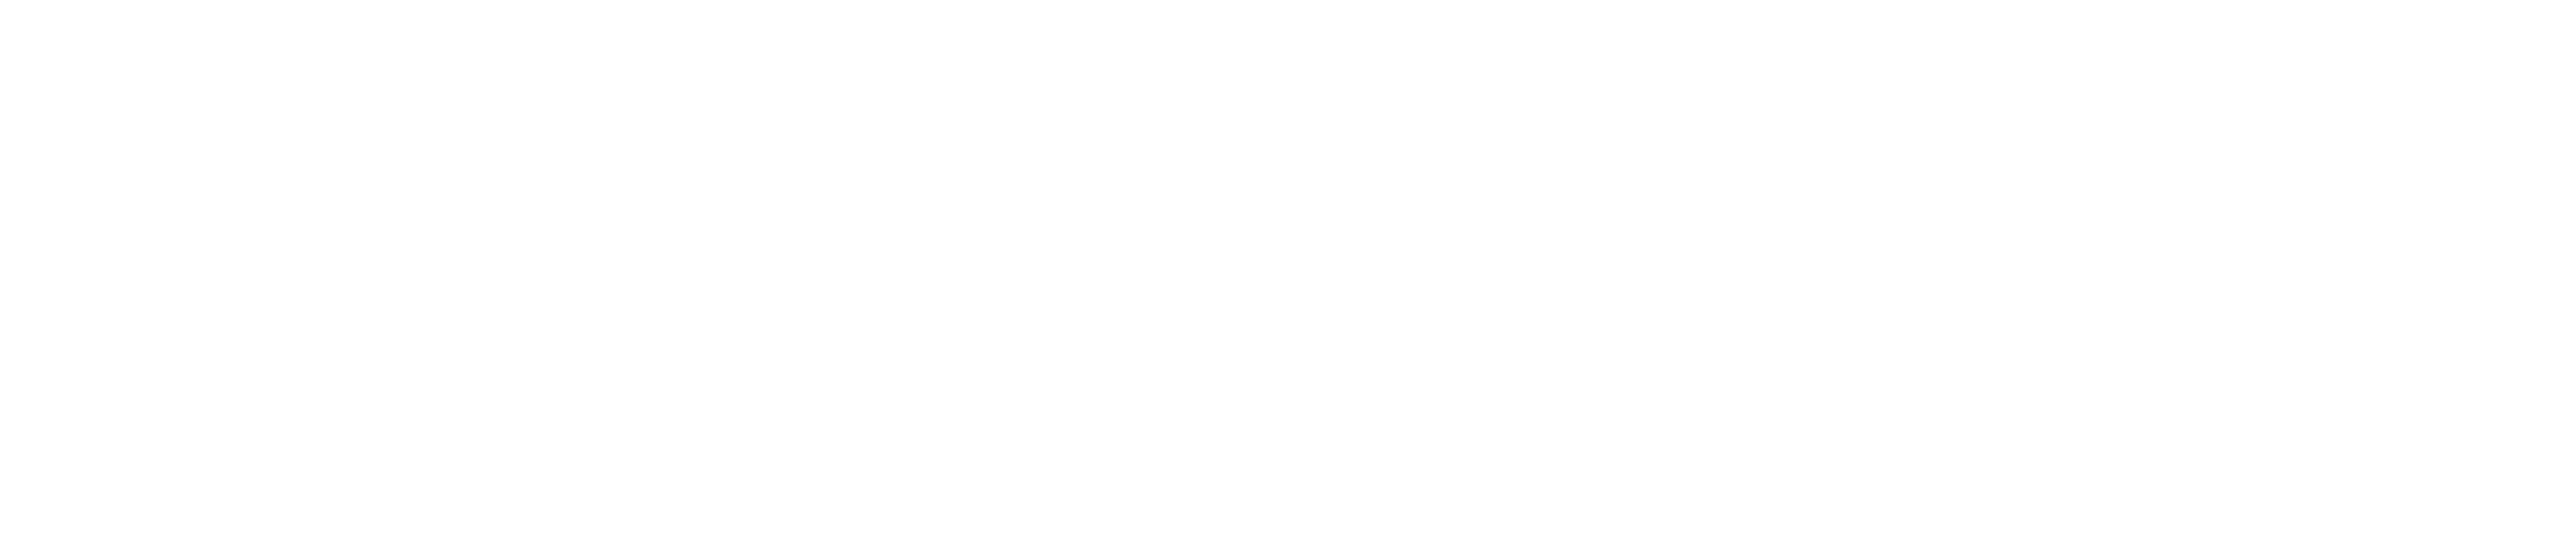 Lakeview Terrace logo